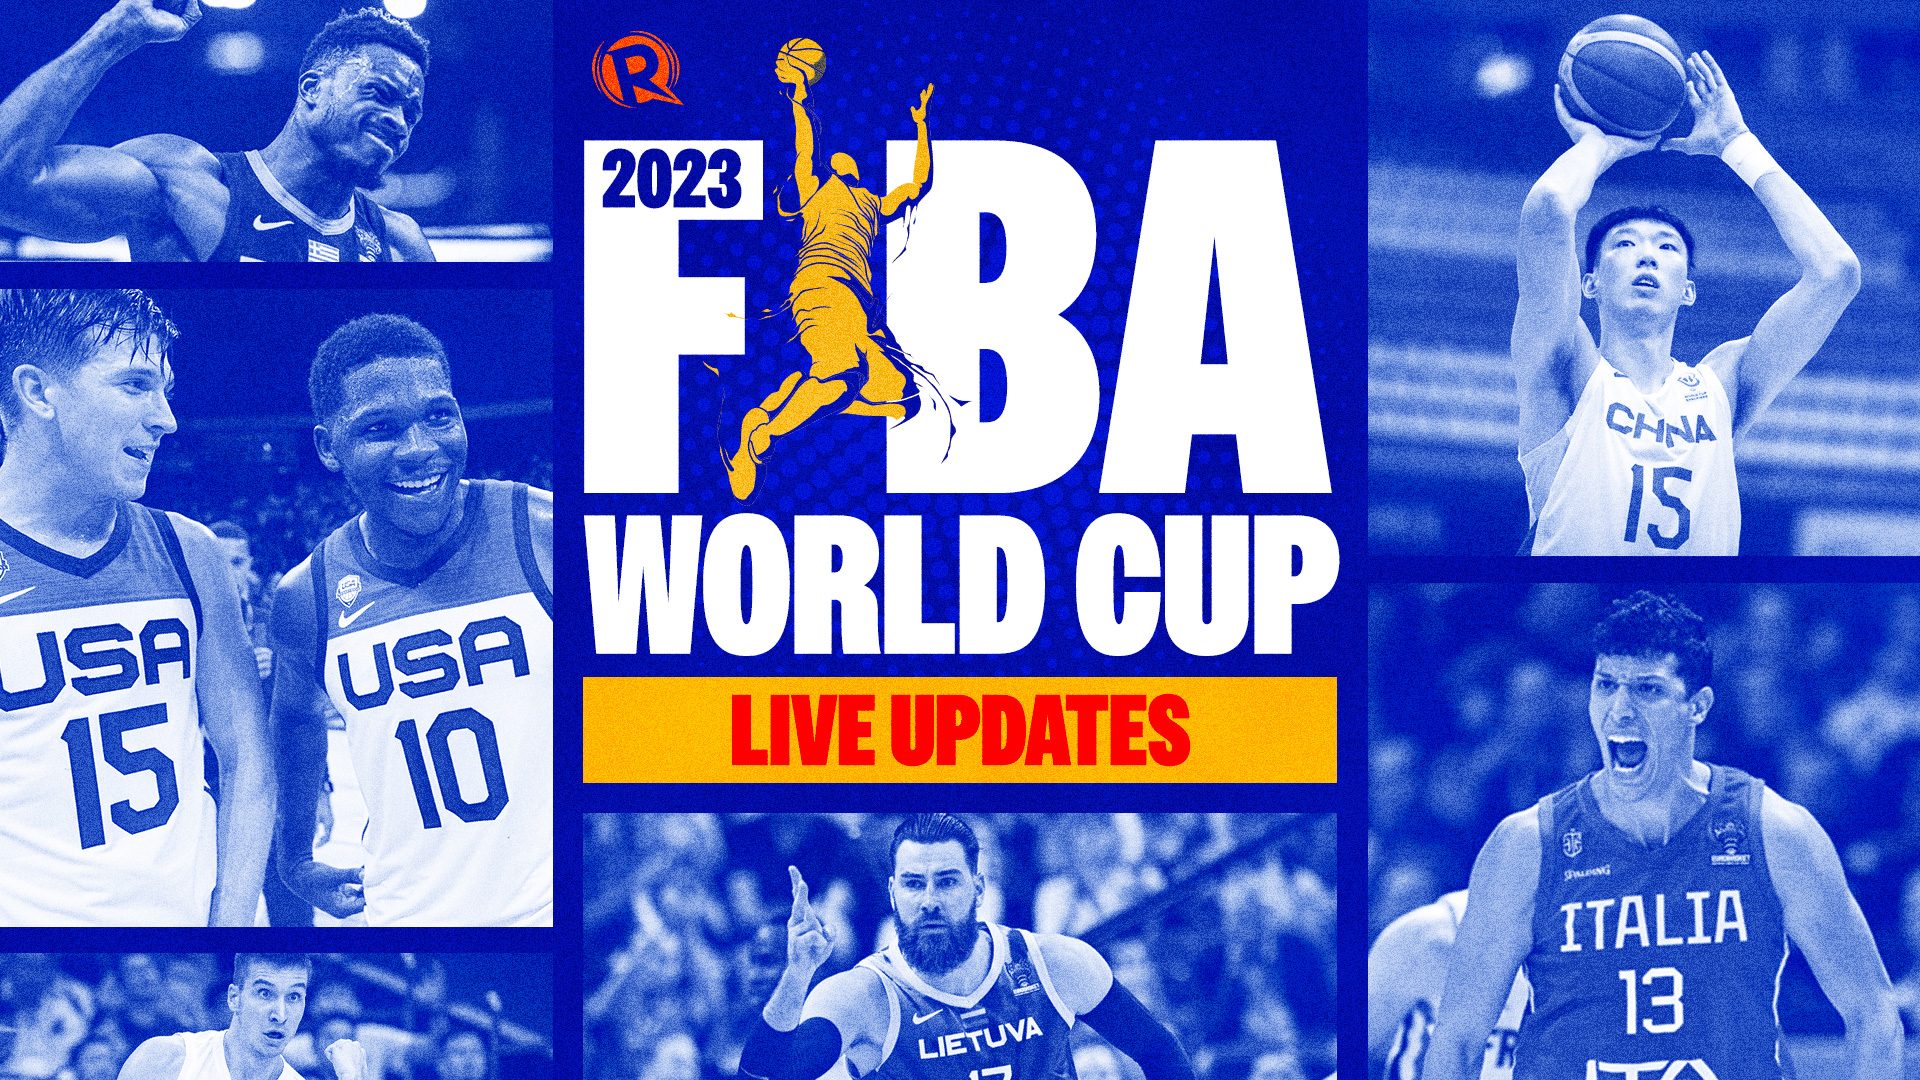 LIVE UPDATES FIBA World Cup 2023 quarterfinals September 6 games